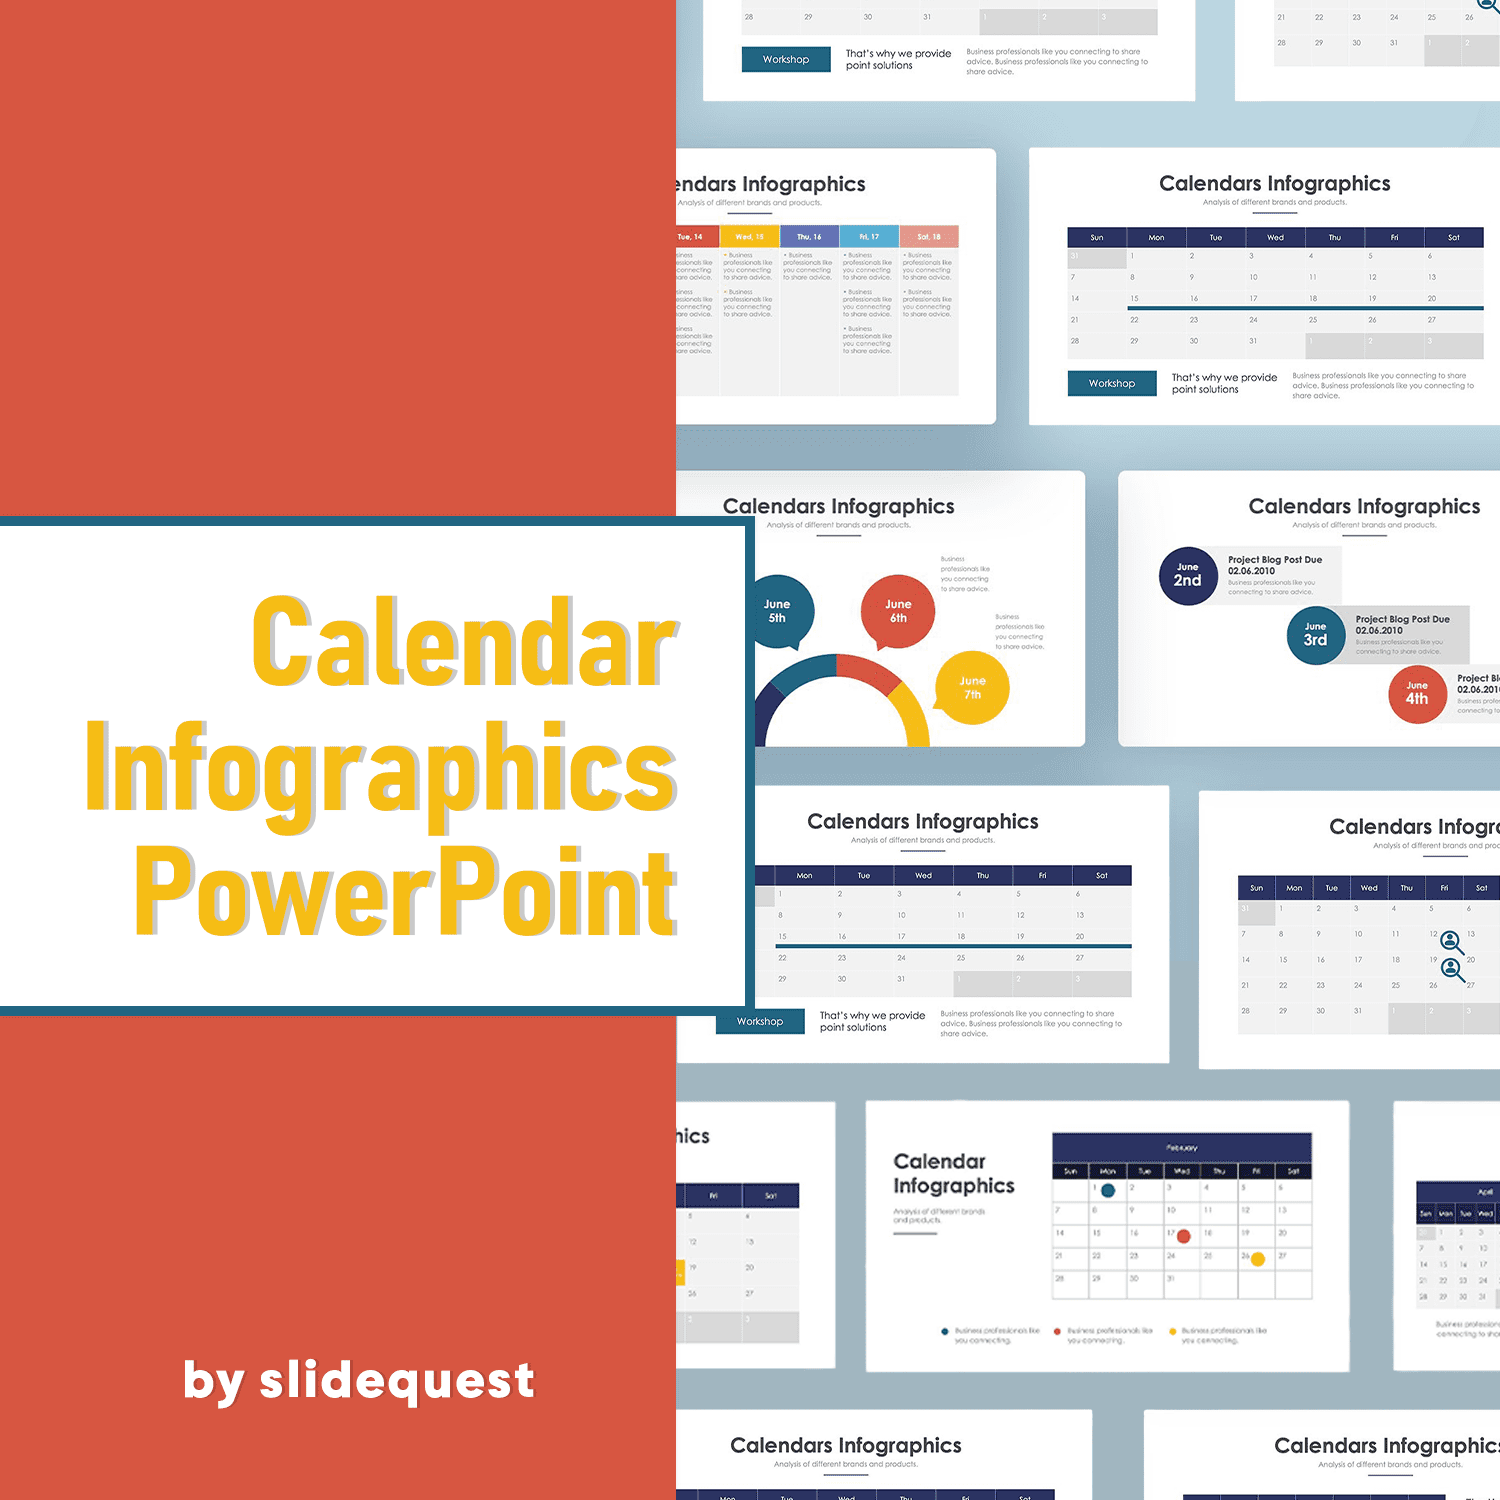 calendar infographics powerpoint.